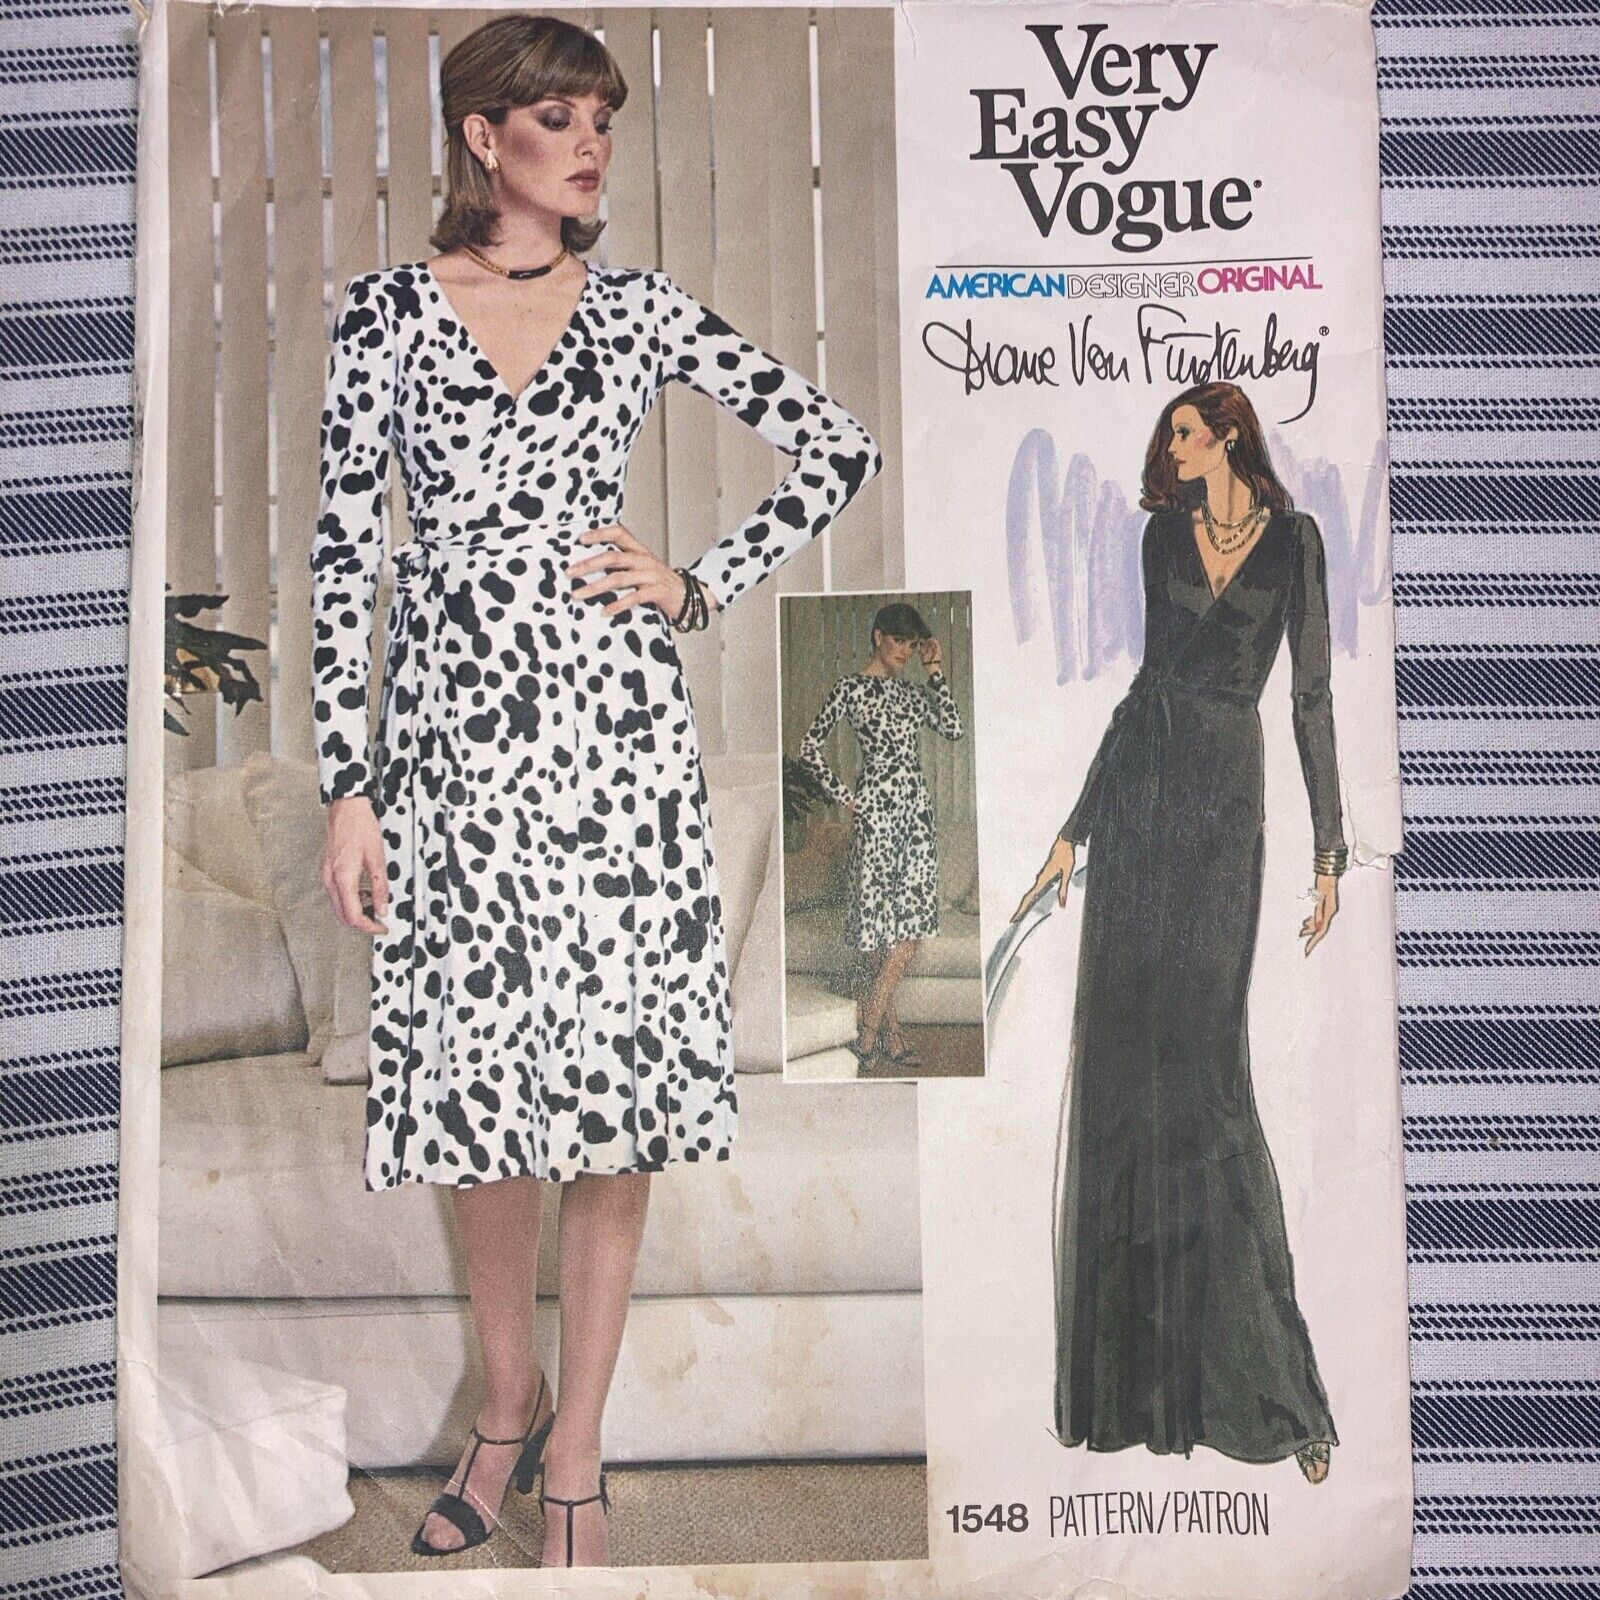 VERY EASY VOGUE 1548  Size  12    CUT          Diane Von Furstenberg  Wrap Dress